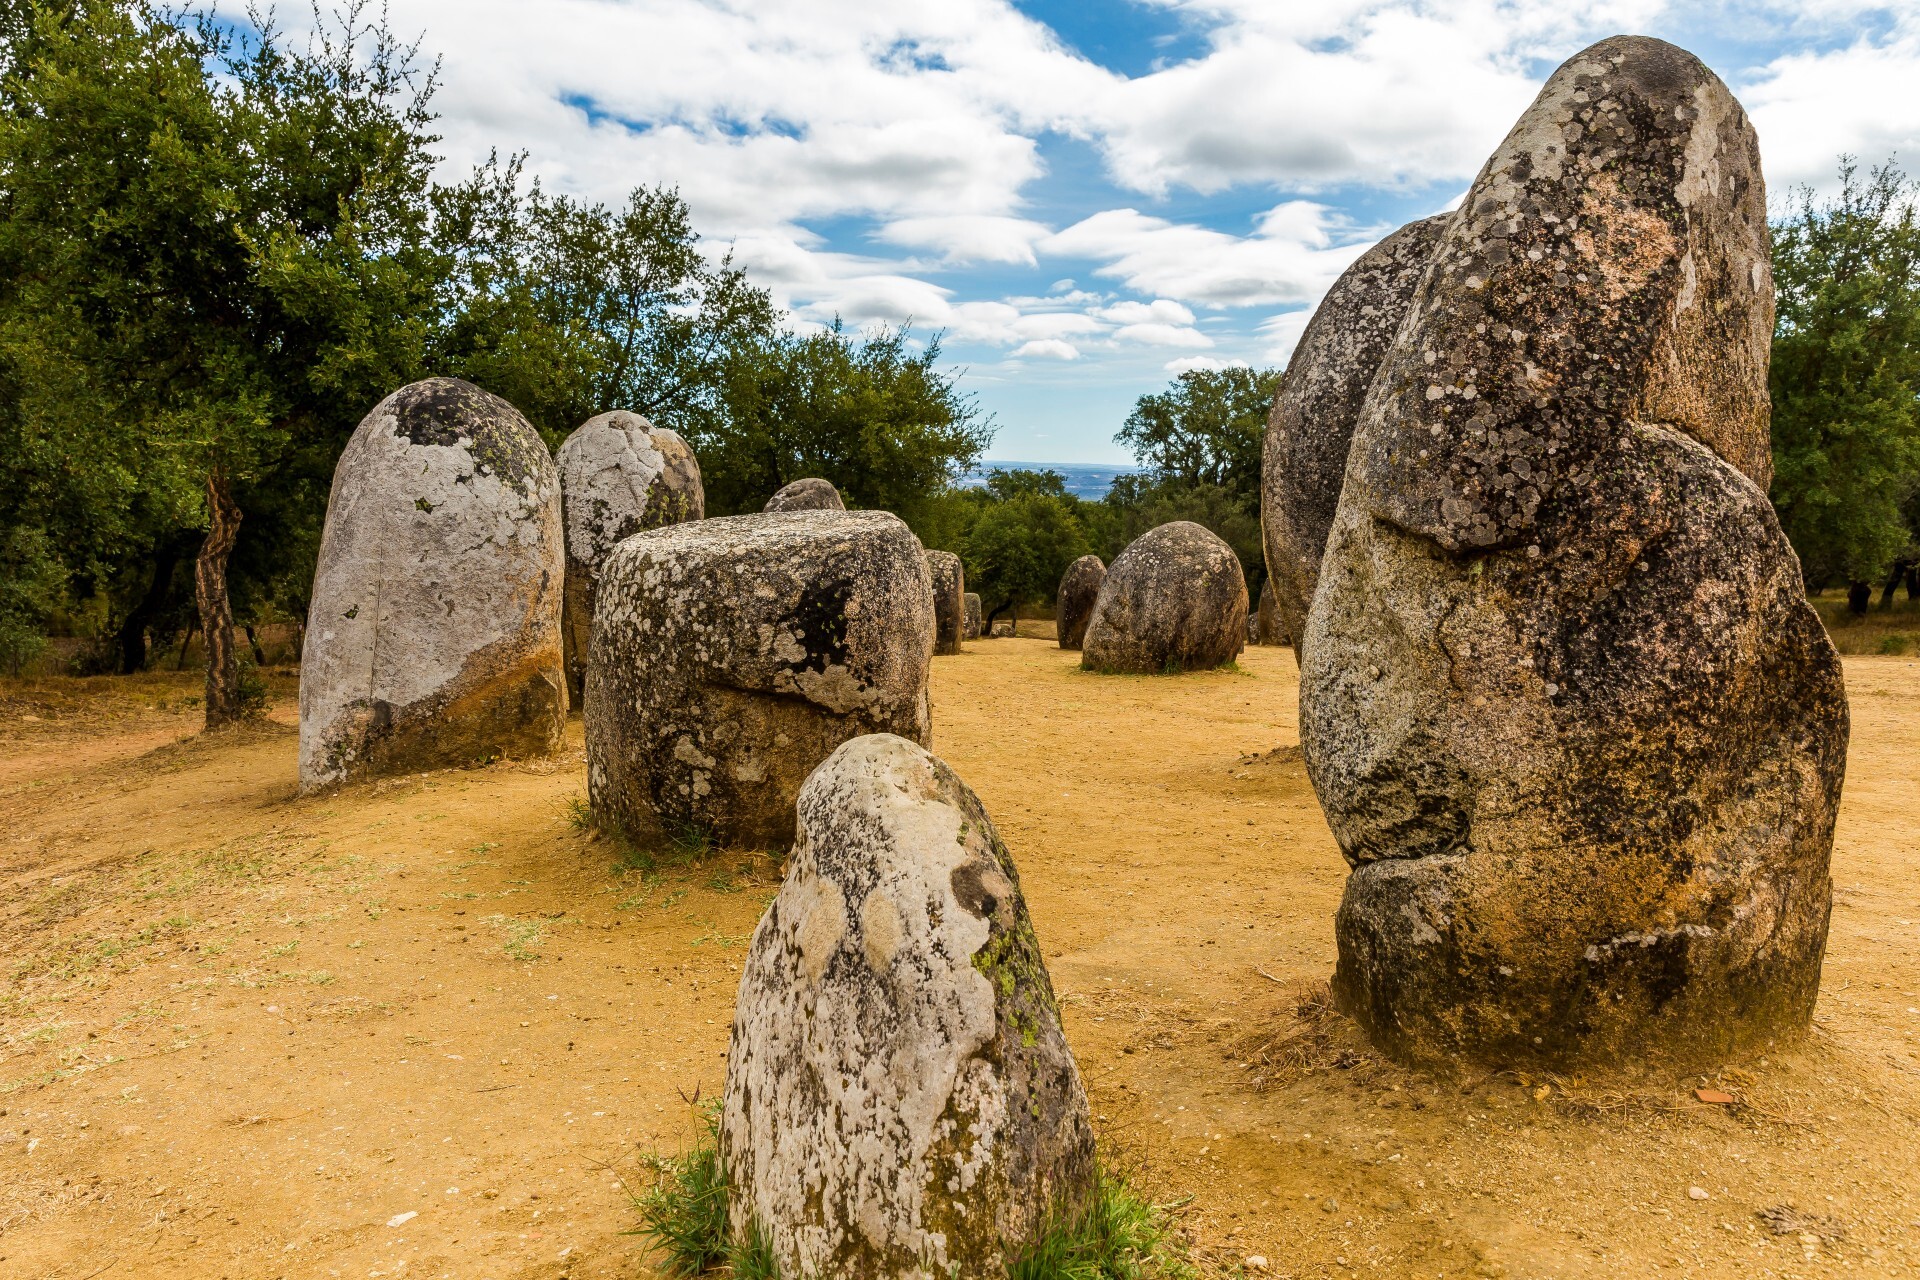 Os monólitos de pedra dispostos em formato circular e em perfeito estado de conservação